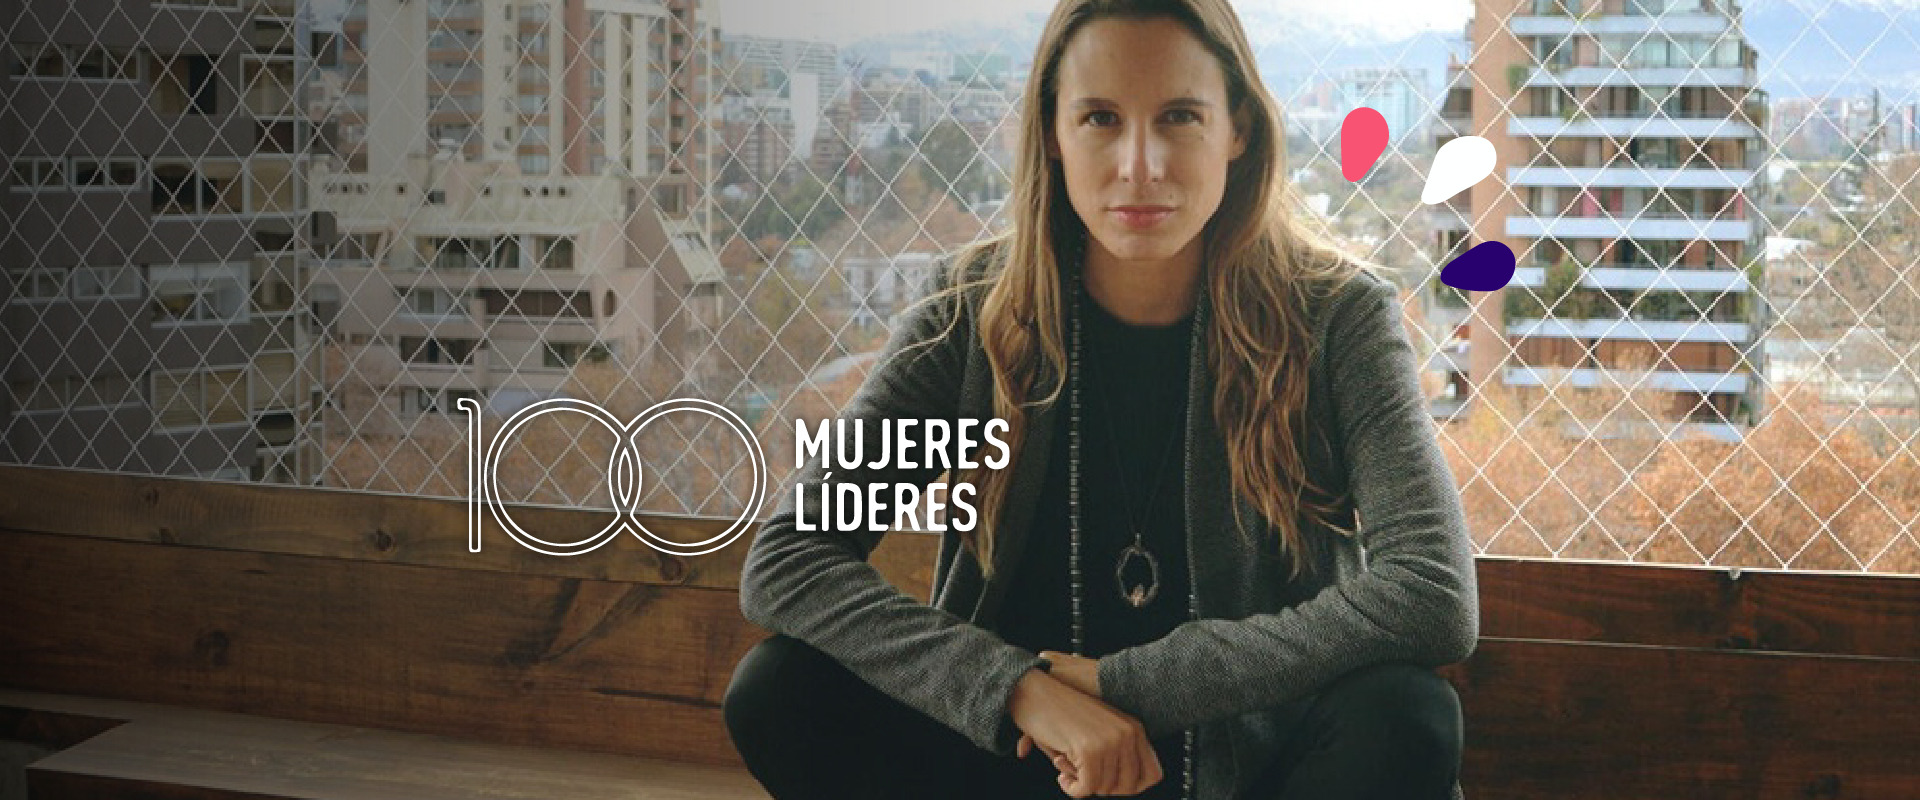 Featured image for “Florencia Álamos, Directora Ejecutiva de Fundación Kiri, Reconocida entre las 100 Mujeres Líderes de Chile según El Mercurio”